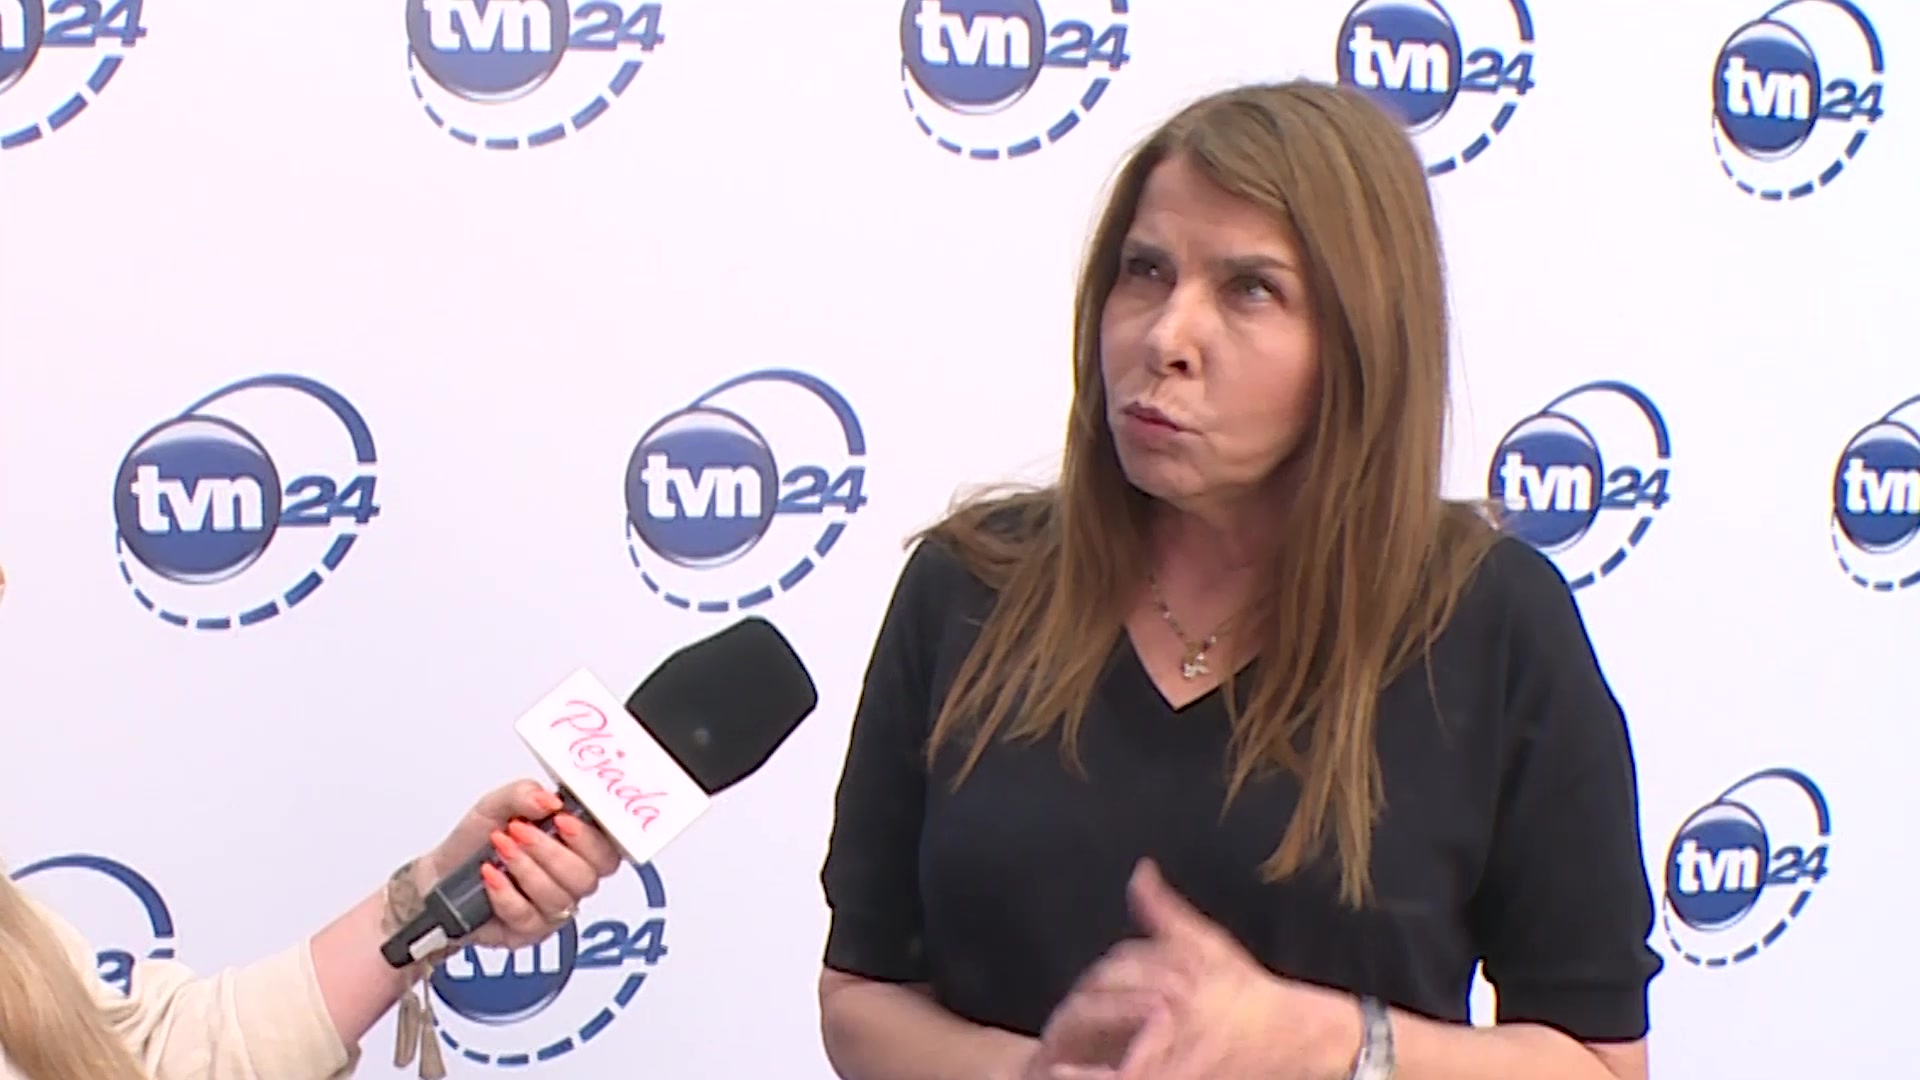 Dziennikarka TVN24 odchodzi ze stacji po ponad 20 latach. Co planuje dalej?